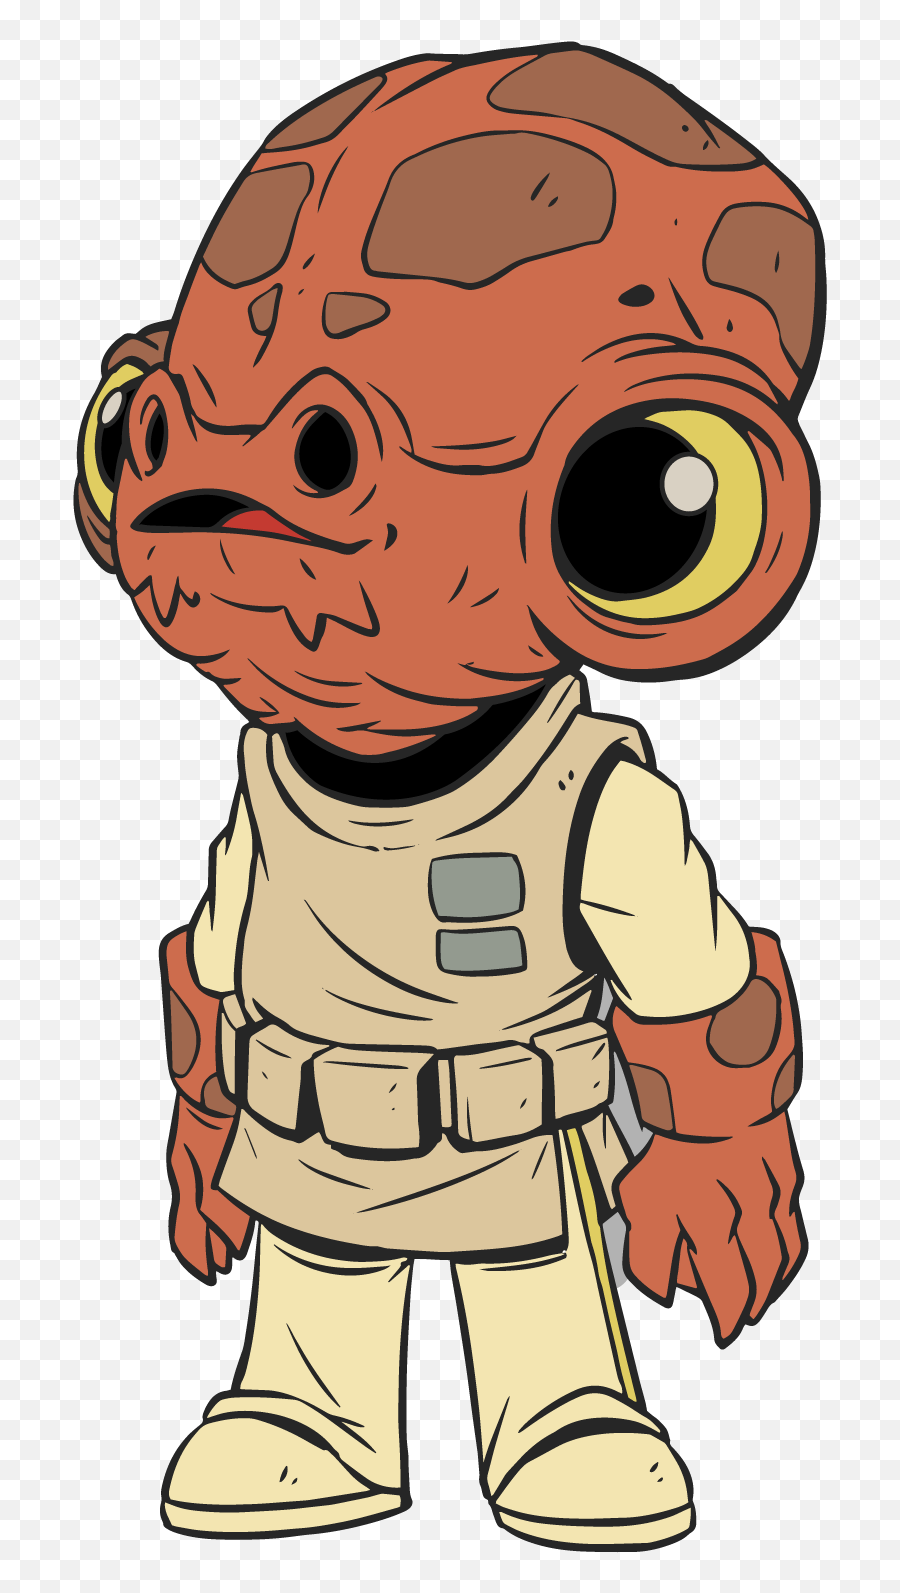 Star Wars Derek Laufman Art Png Image - Derek Laufman Star Wars Ewok Emoji,Chewbacca Clipart